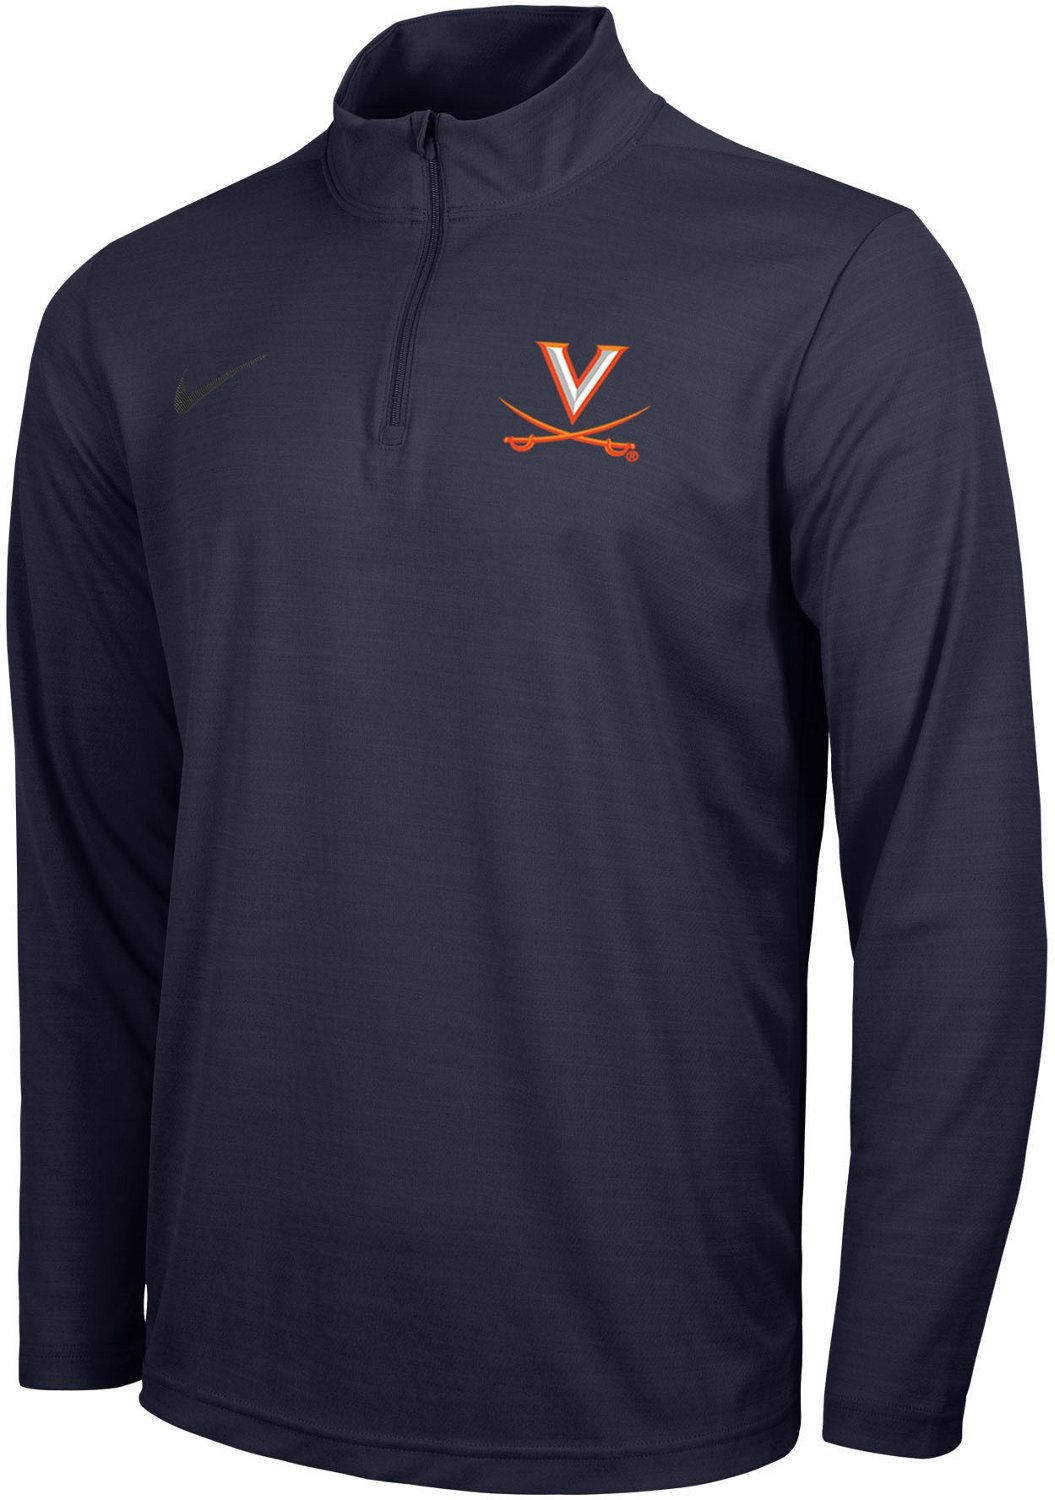 Nike Men's University of Virginia Logo Intensity 1/4 Zip Sweatshirt ...